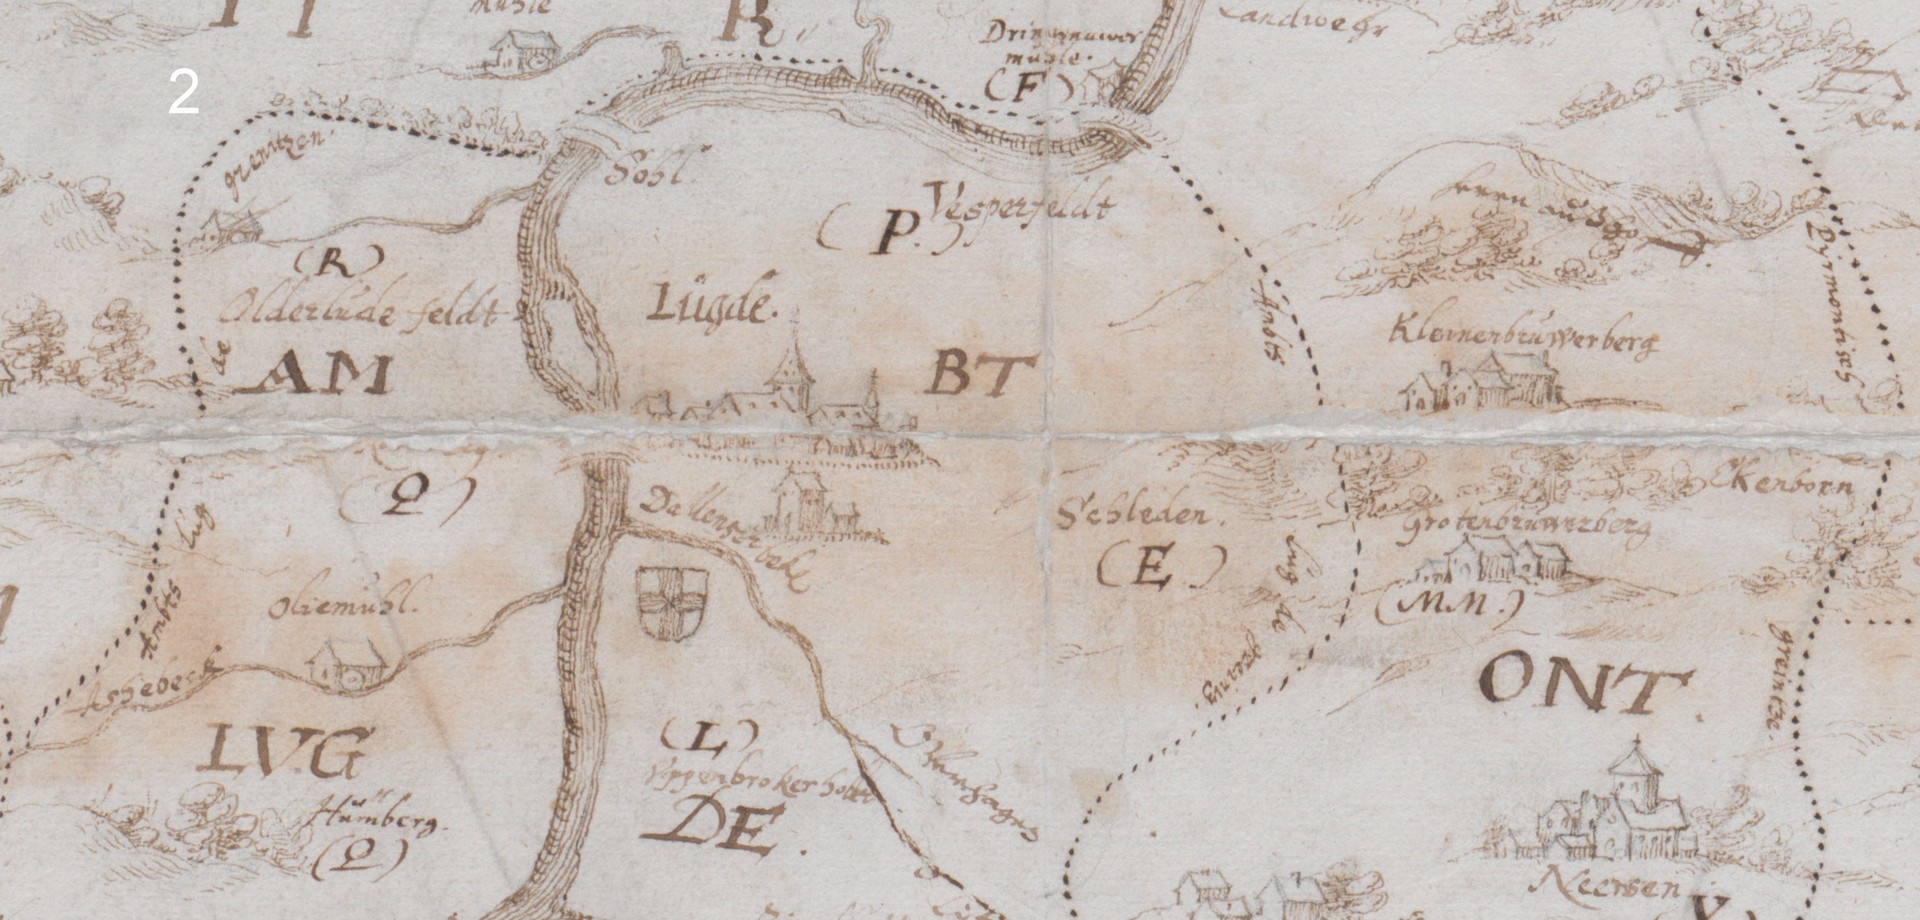 Karte des Amtes Lügde und seiner Grenzen, vermutl. 16. Jh. (Landesarchiv NRW, Abt. Westfalen, Karte A 8793).